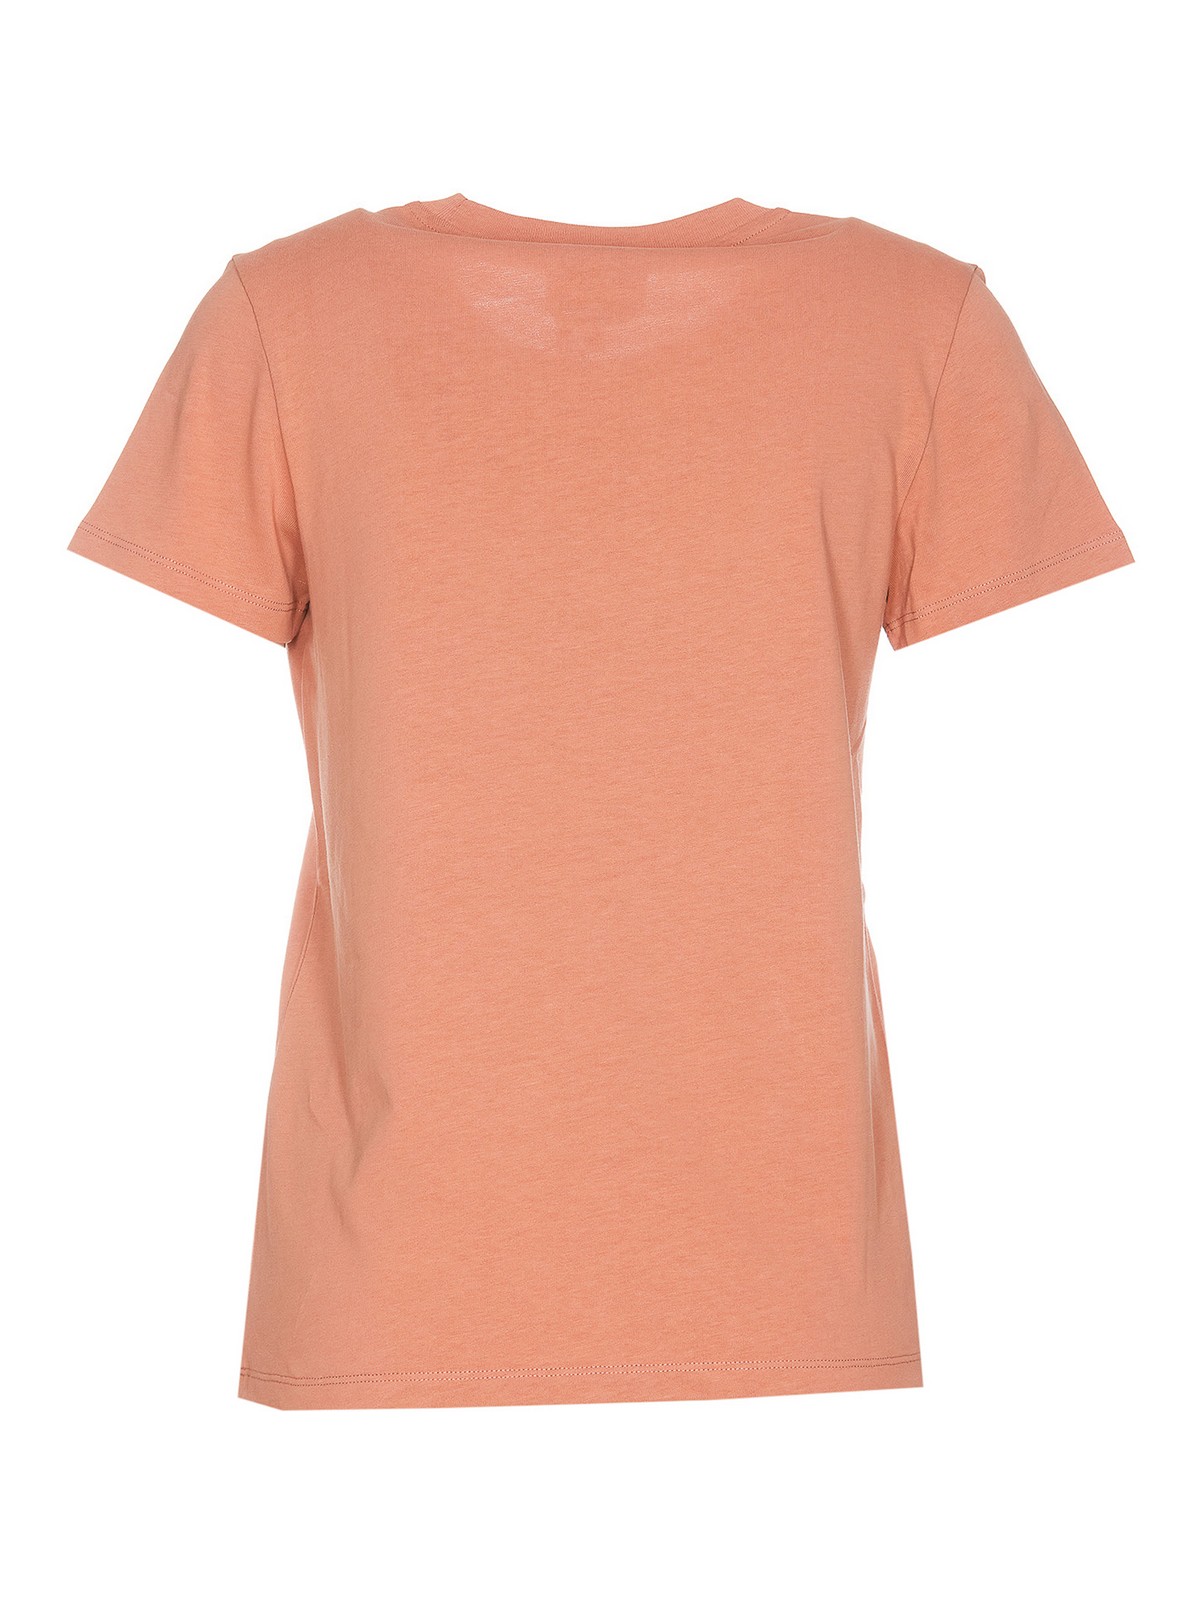 Shop Apc Camiseta - Color Carne Y Neutral In Nude & Neutrals